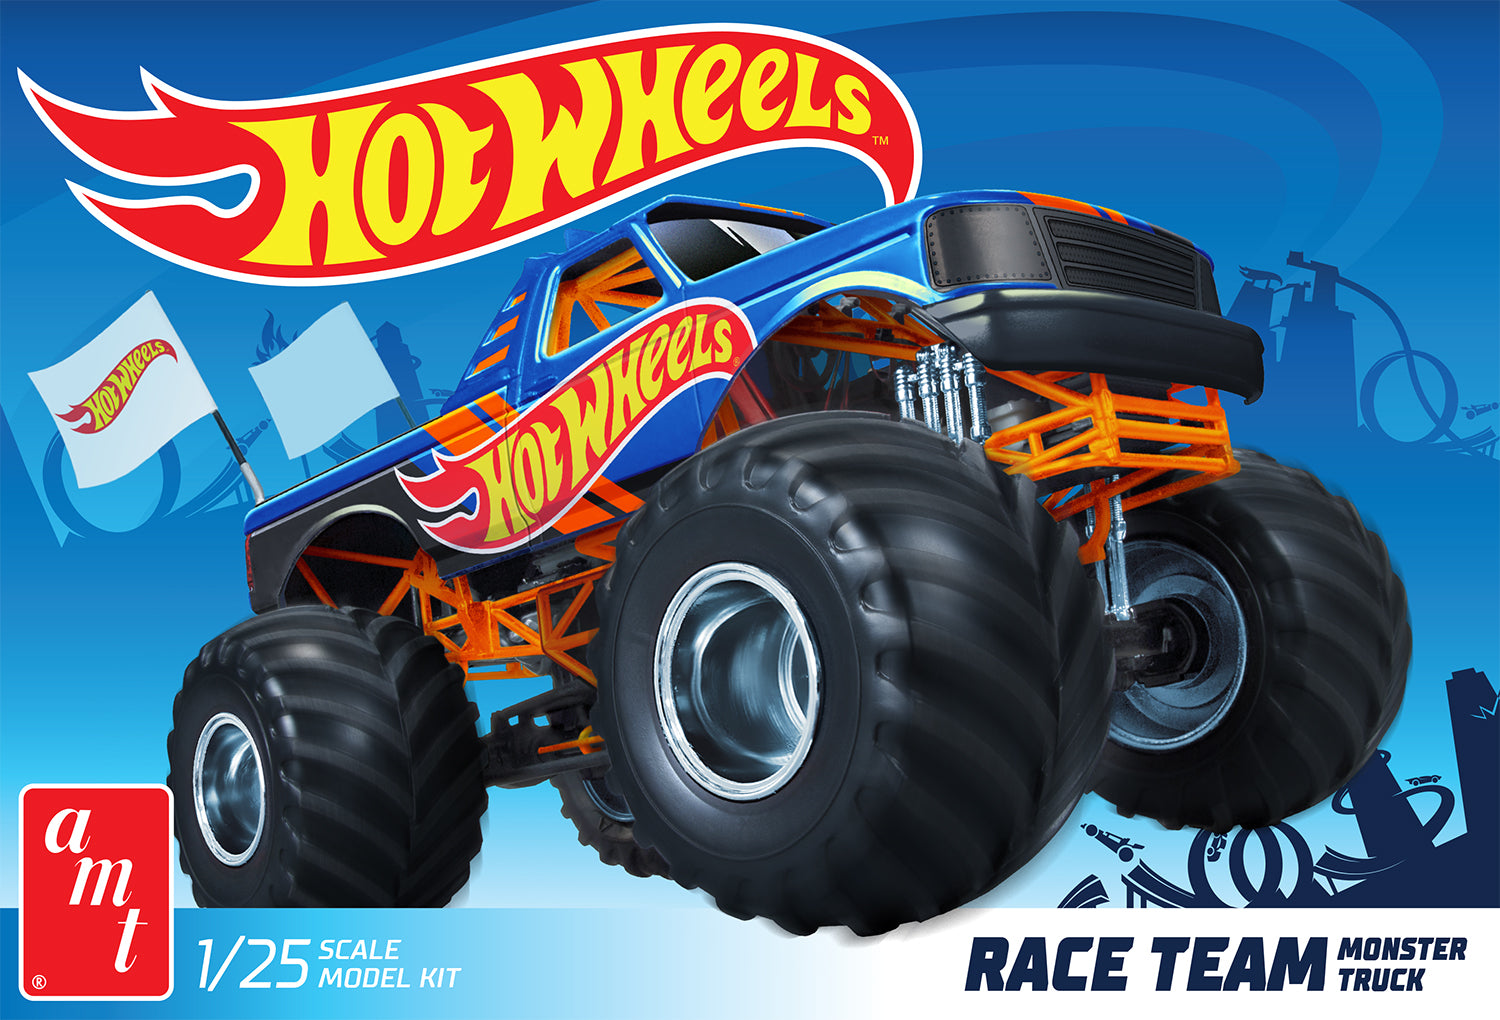 AMT Race Team Monster Truck Hot Wheels 1:25 Scale Model Kit